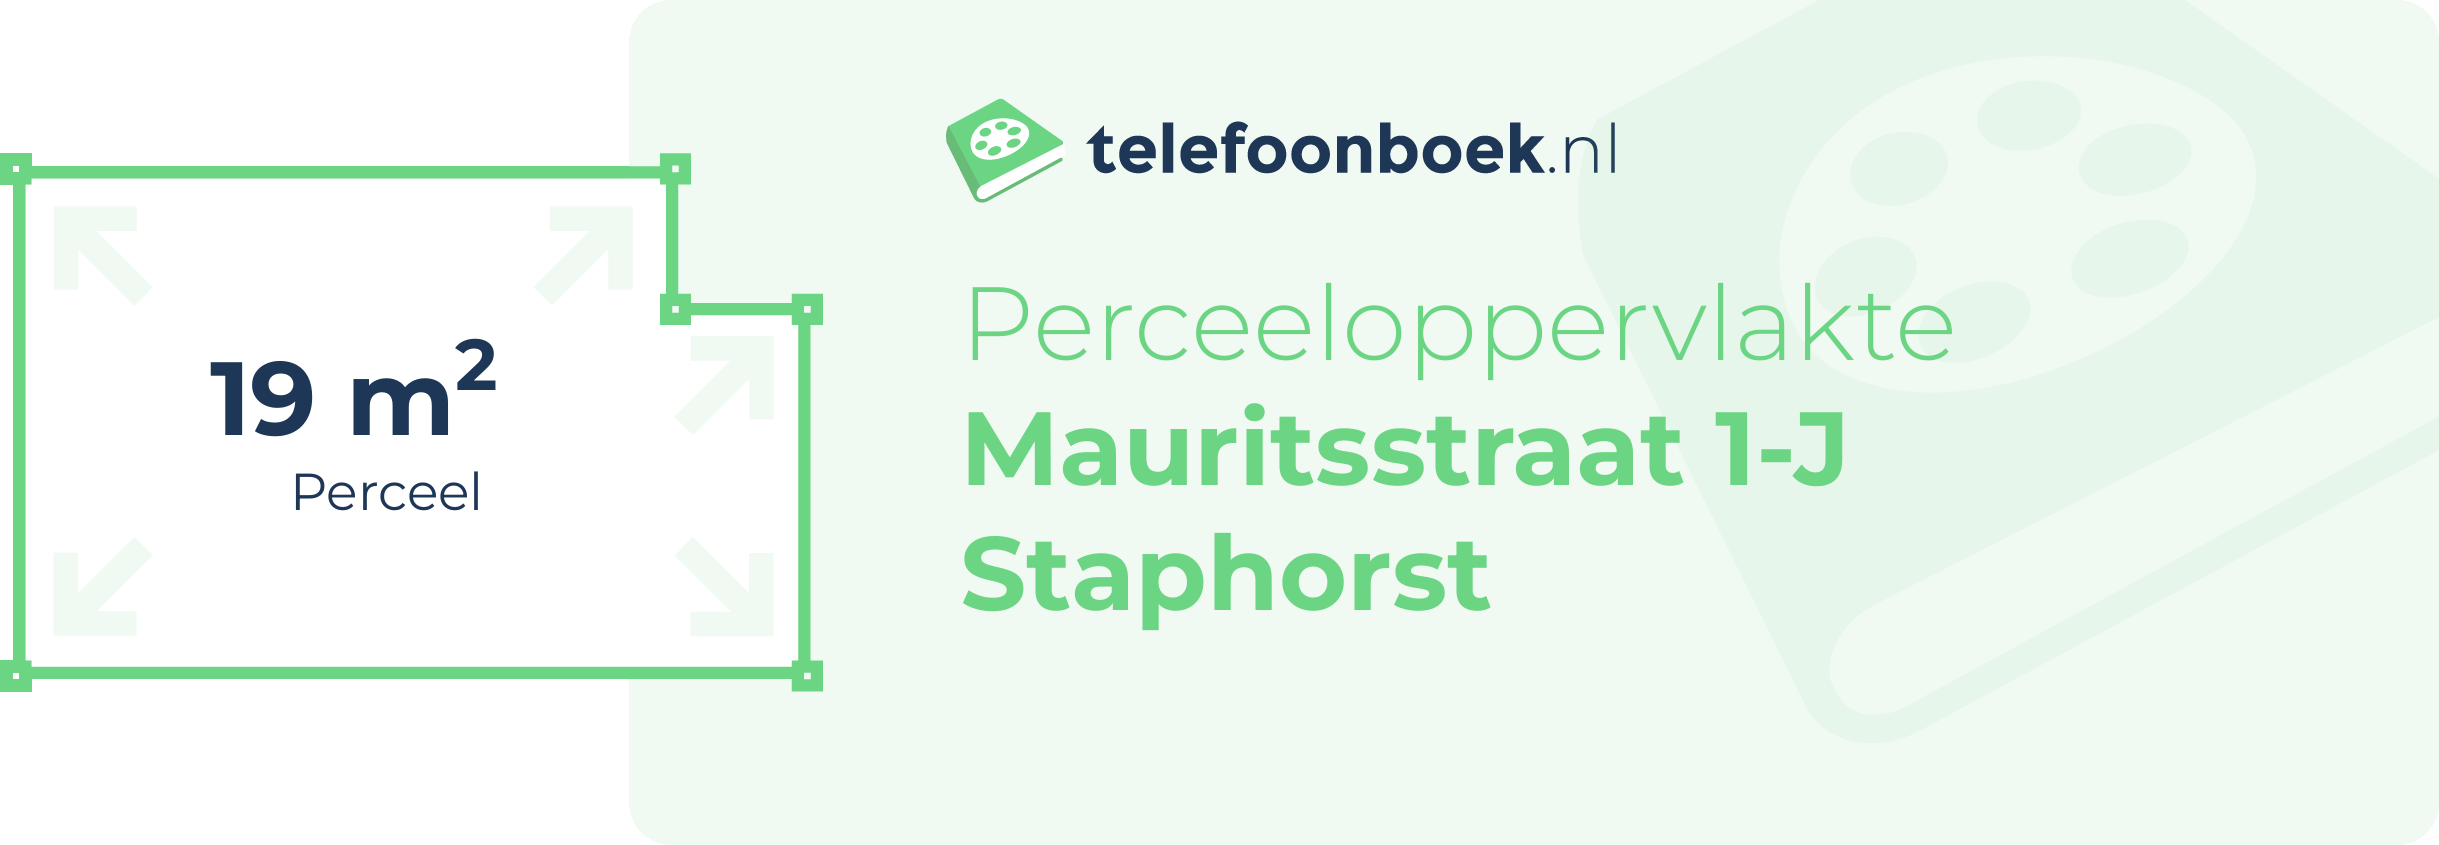 Perceeloppervlakte Mauritsstraat 1-J Staphorst